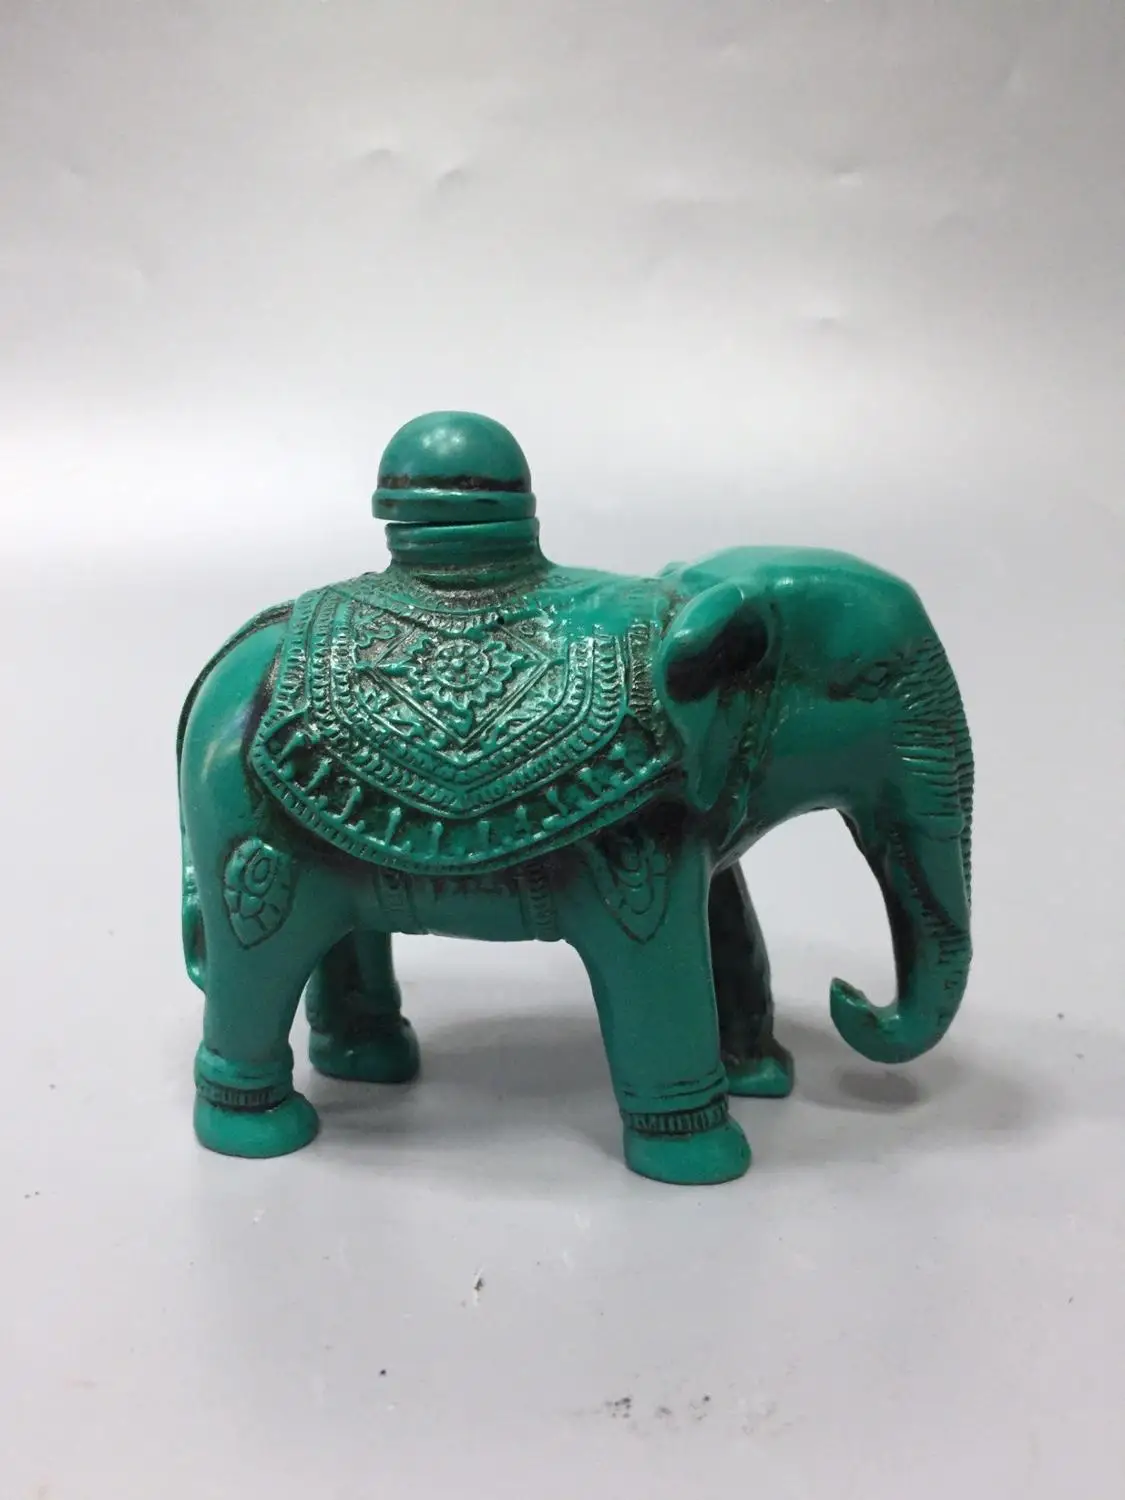 Китайские старые Пекинские товары бирюзовая резьба слон табак бутылка|Статуи и